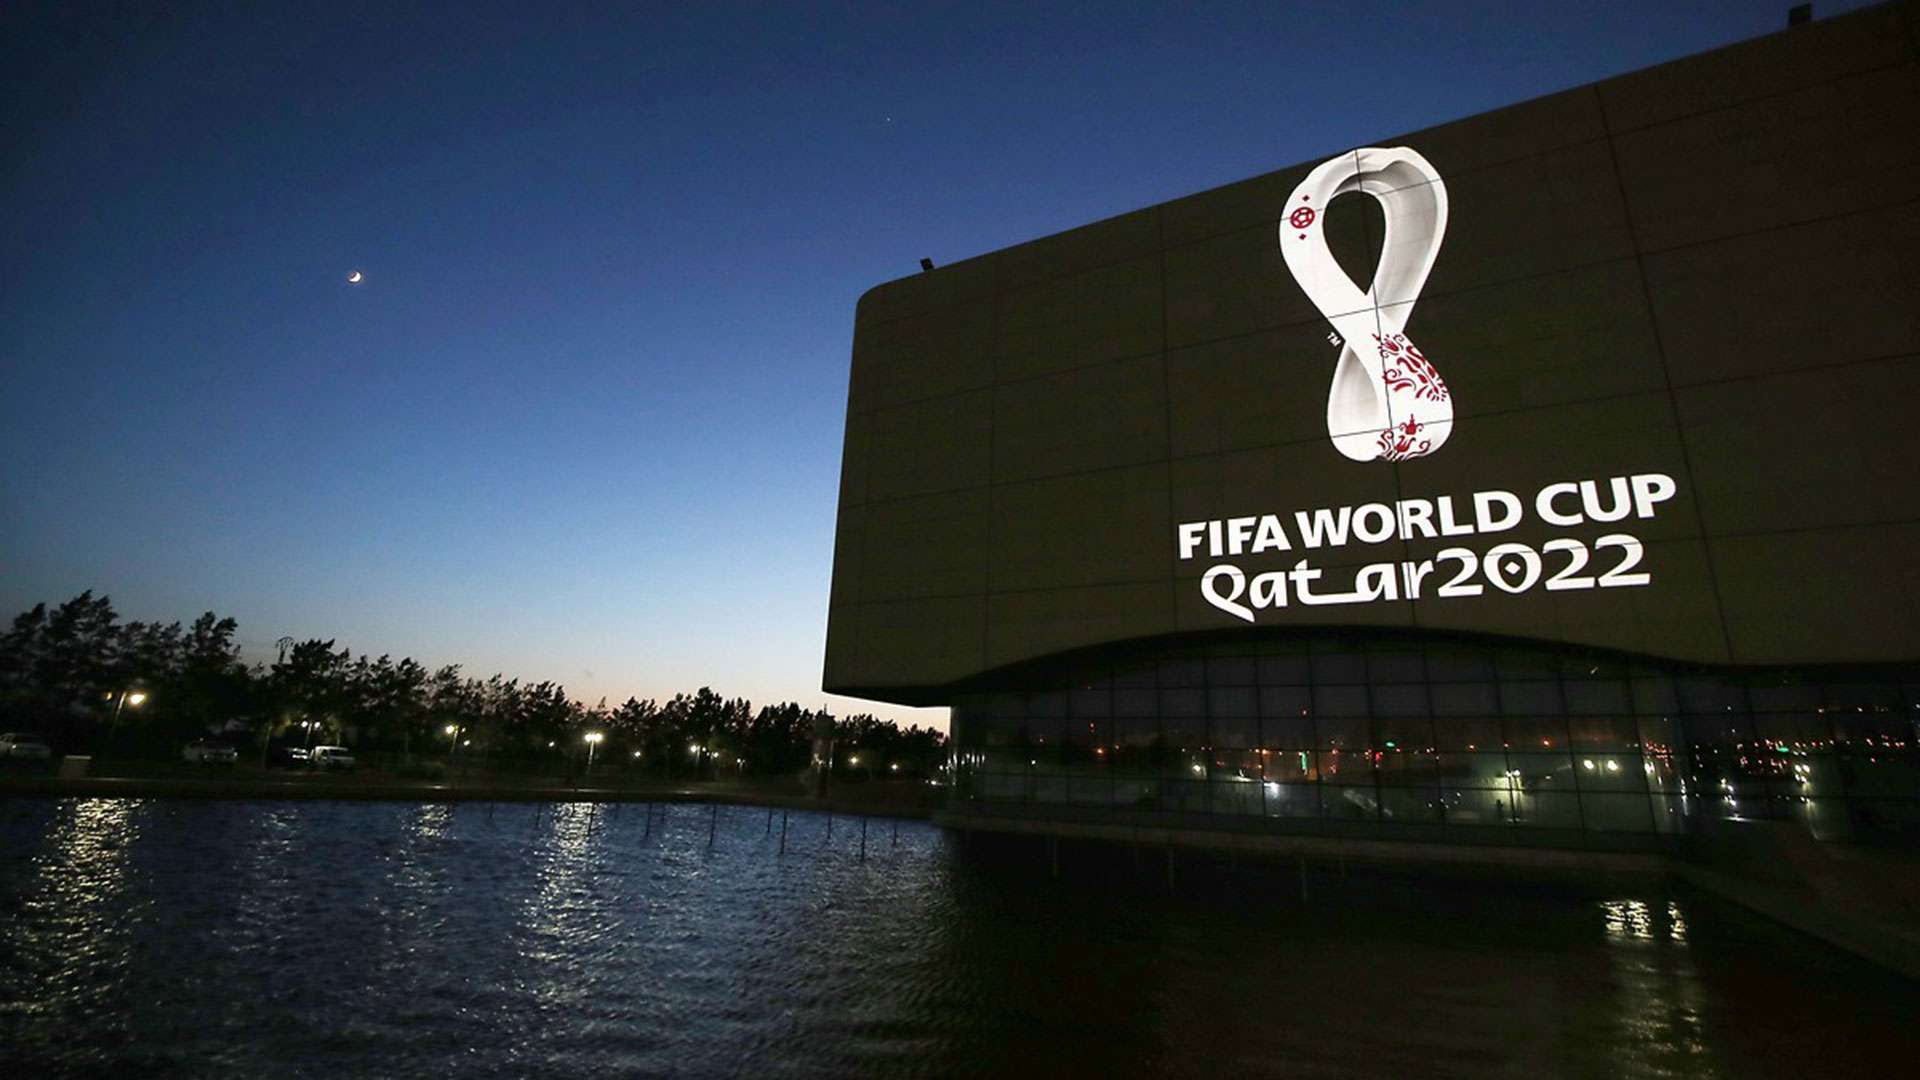 2022 World Cup Qatar Logo